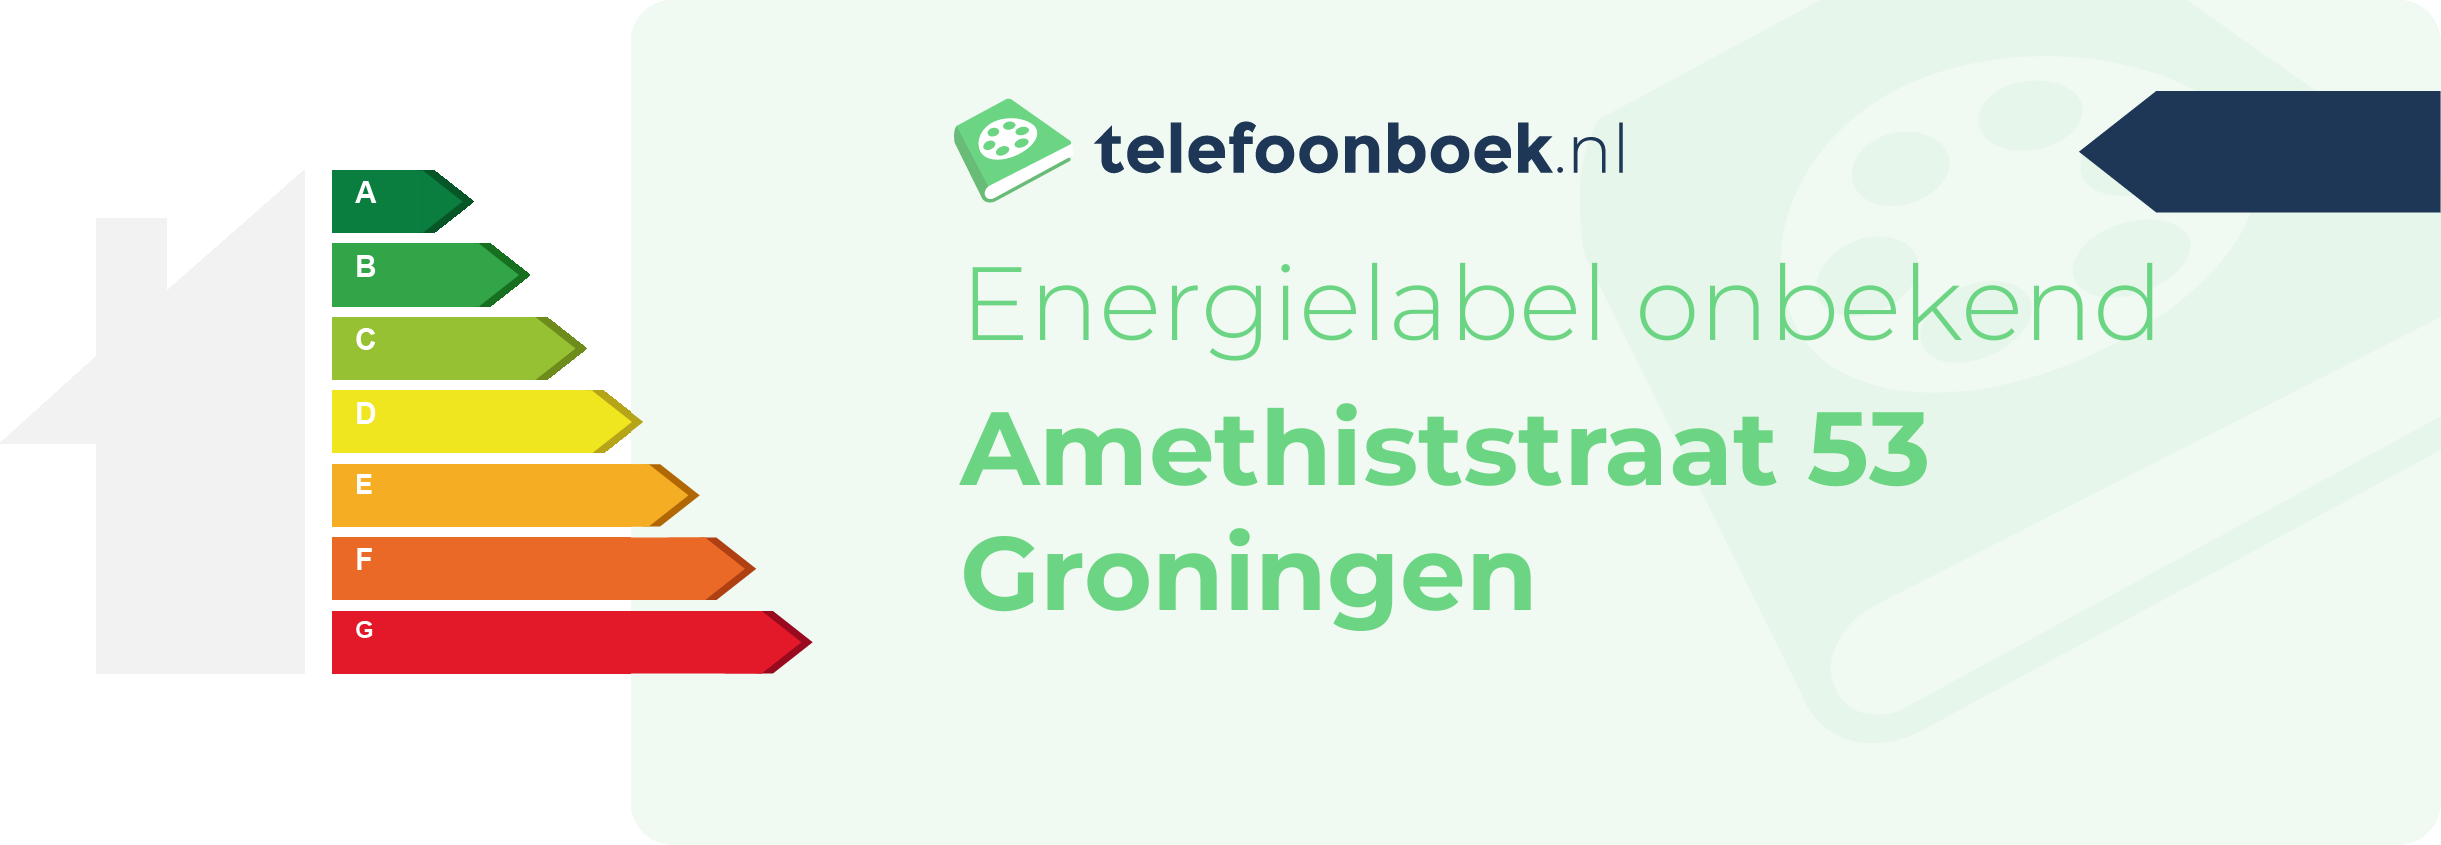 Energielabel Amethiststraat 53 Groningen